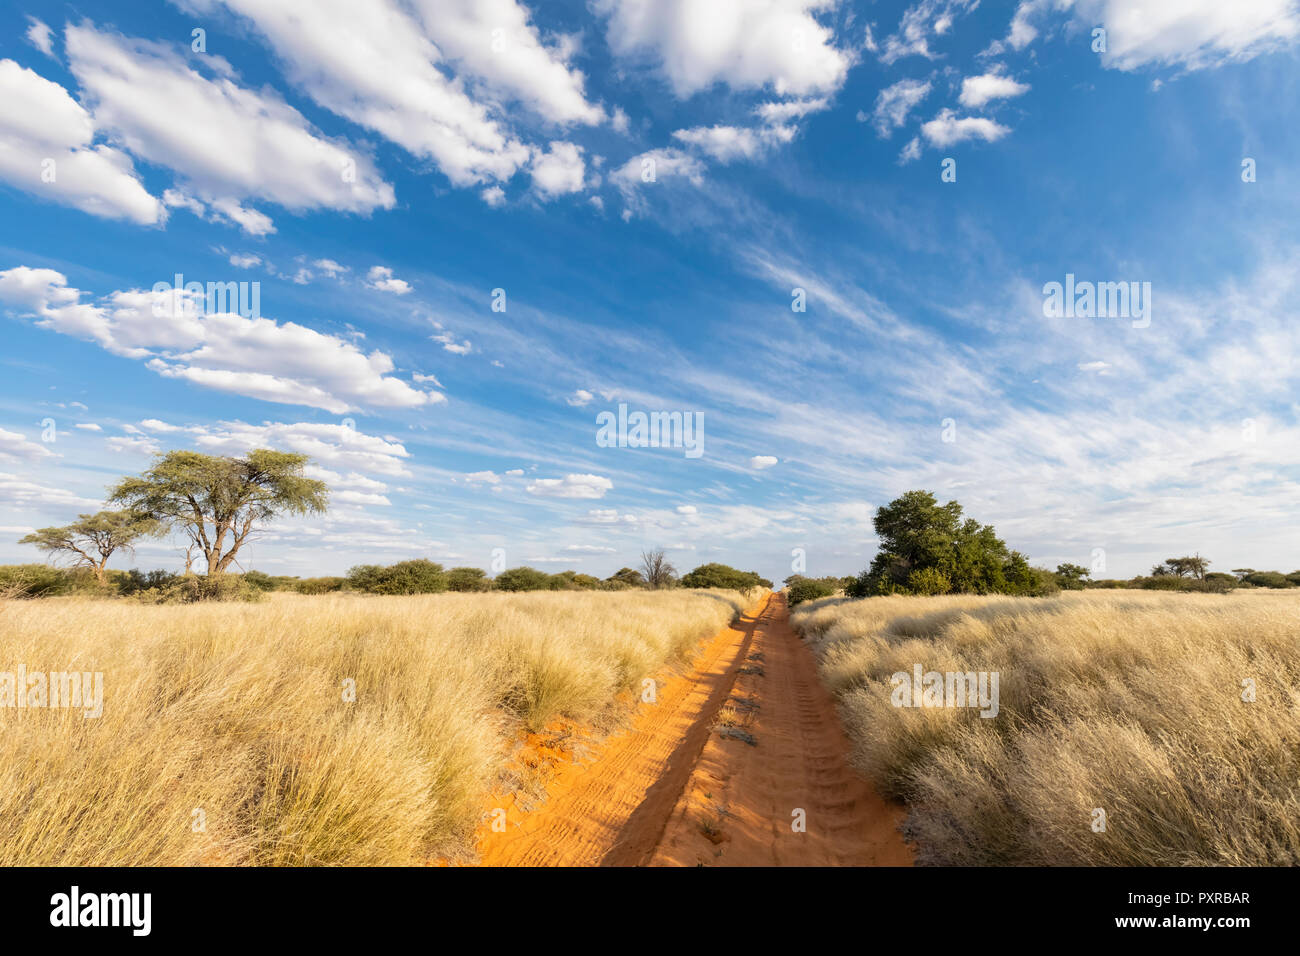 L'Afrique, Botswana, Kgalagadi Transfrontier Park, Mabuasehube Game Reserve, piste de sable vide Banque D'Images